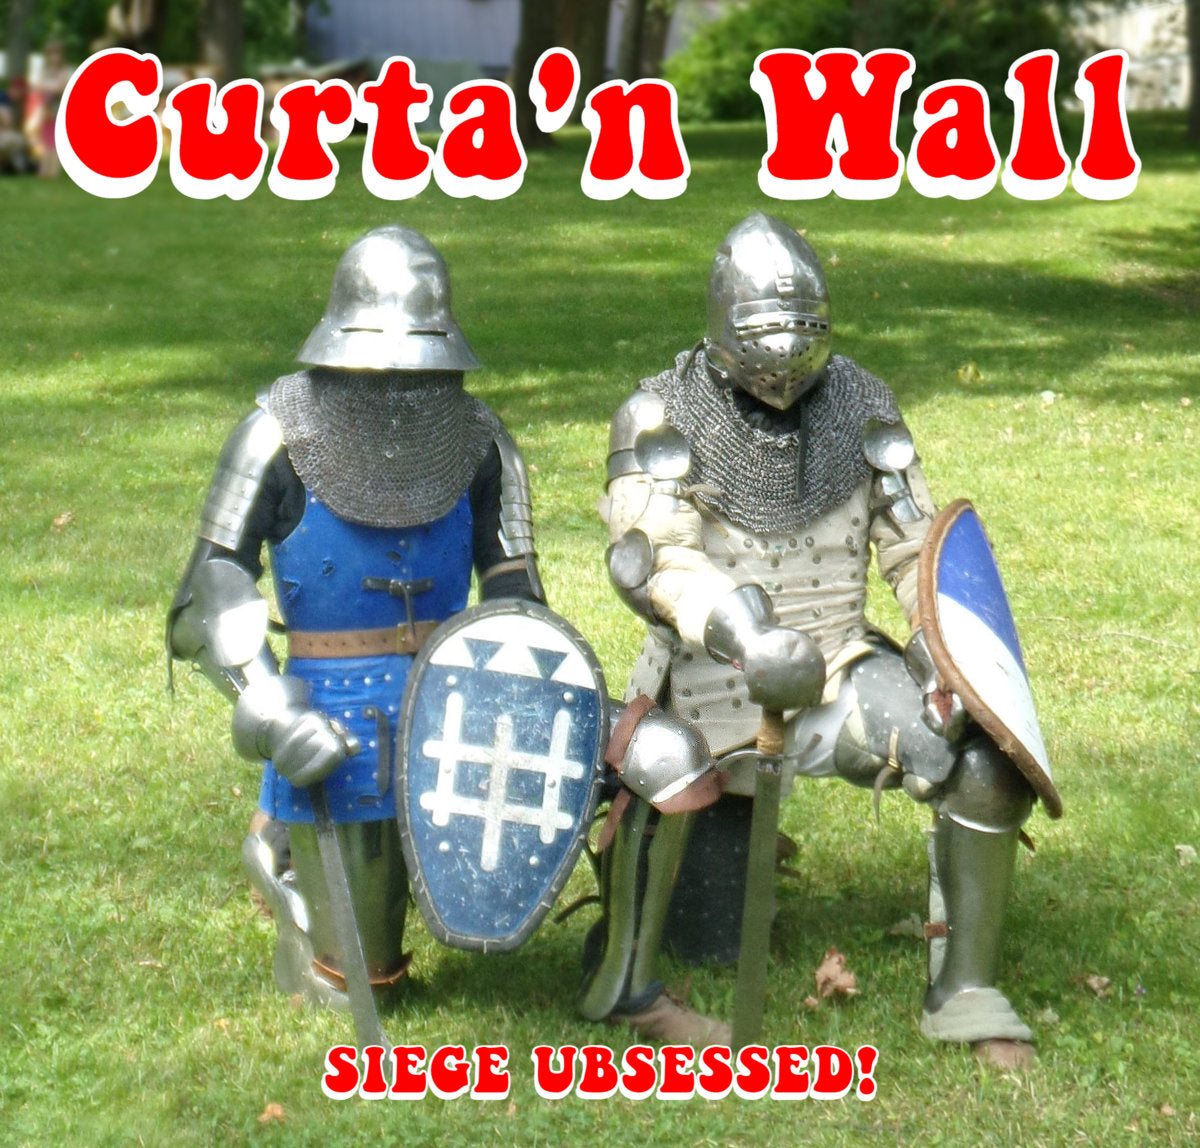 CURTA'N WALL - Siege Ubsessed LP